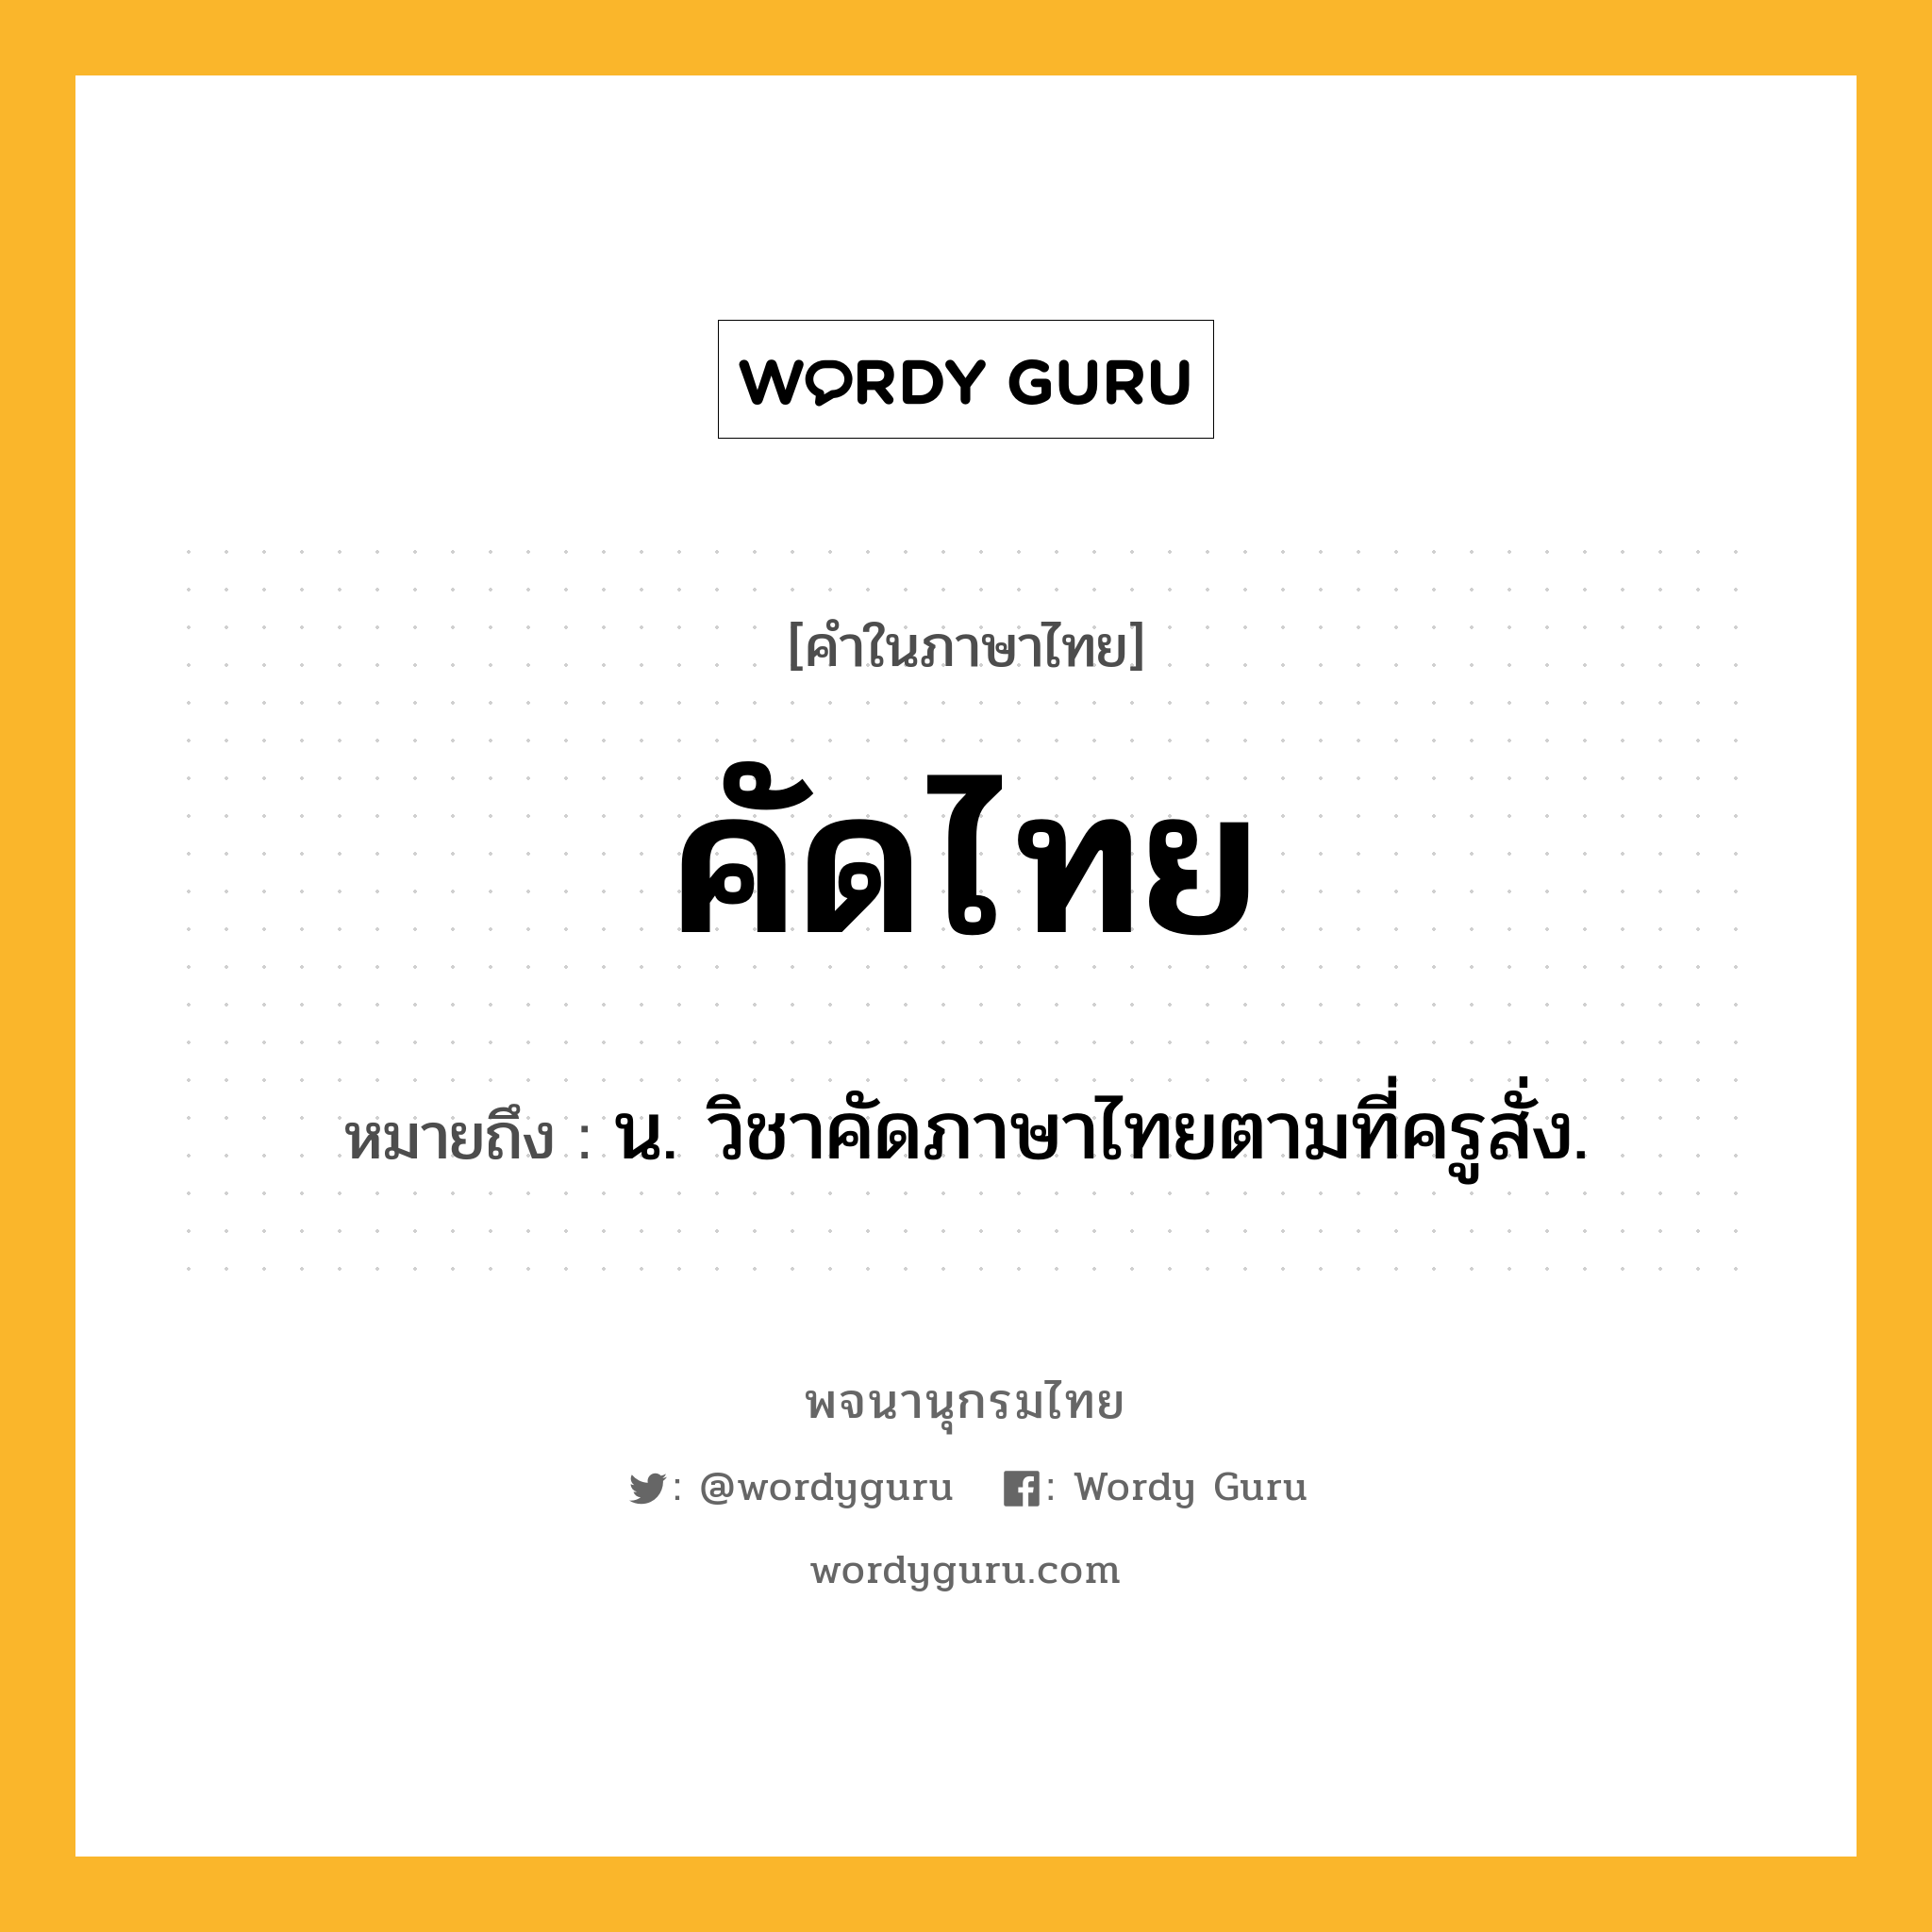 คัดไทย ความหมาย หมายถึงอะไร?, คำในภาษาไทย คัดไทย หมายถึง น. วิชาคัดภาษาไทยตามที่ครูสั่ง.